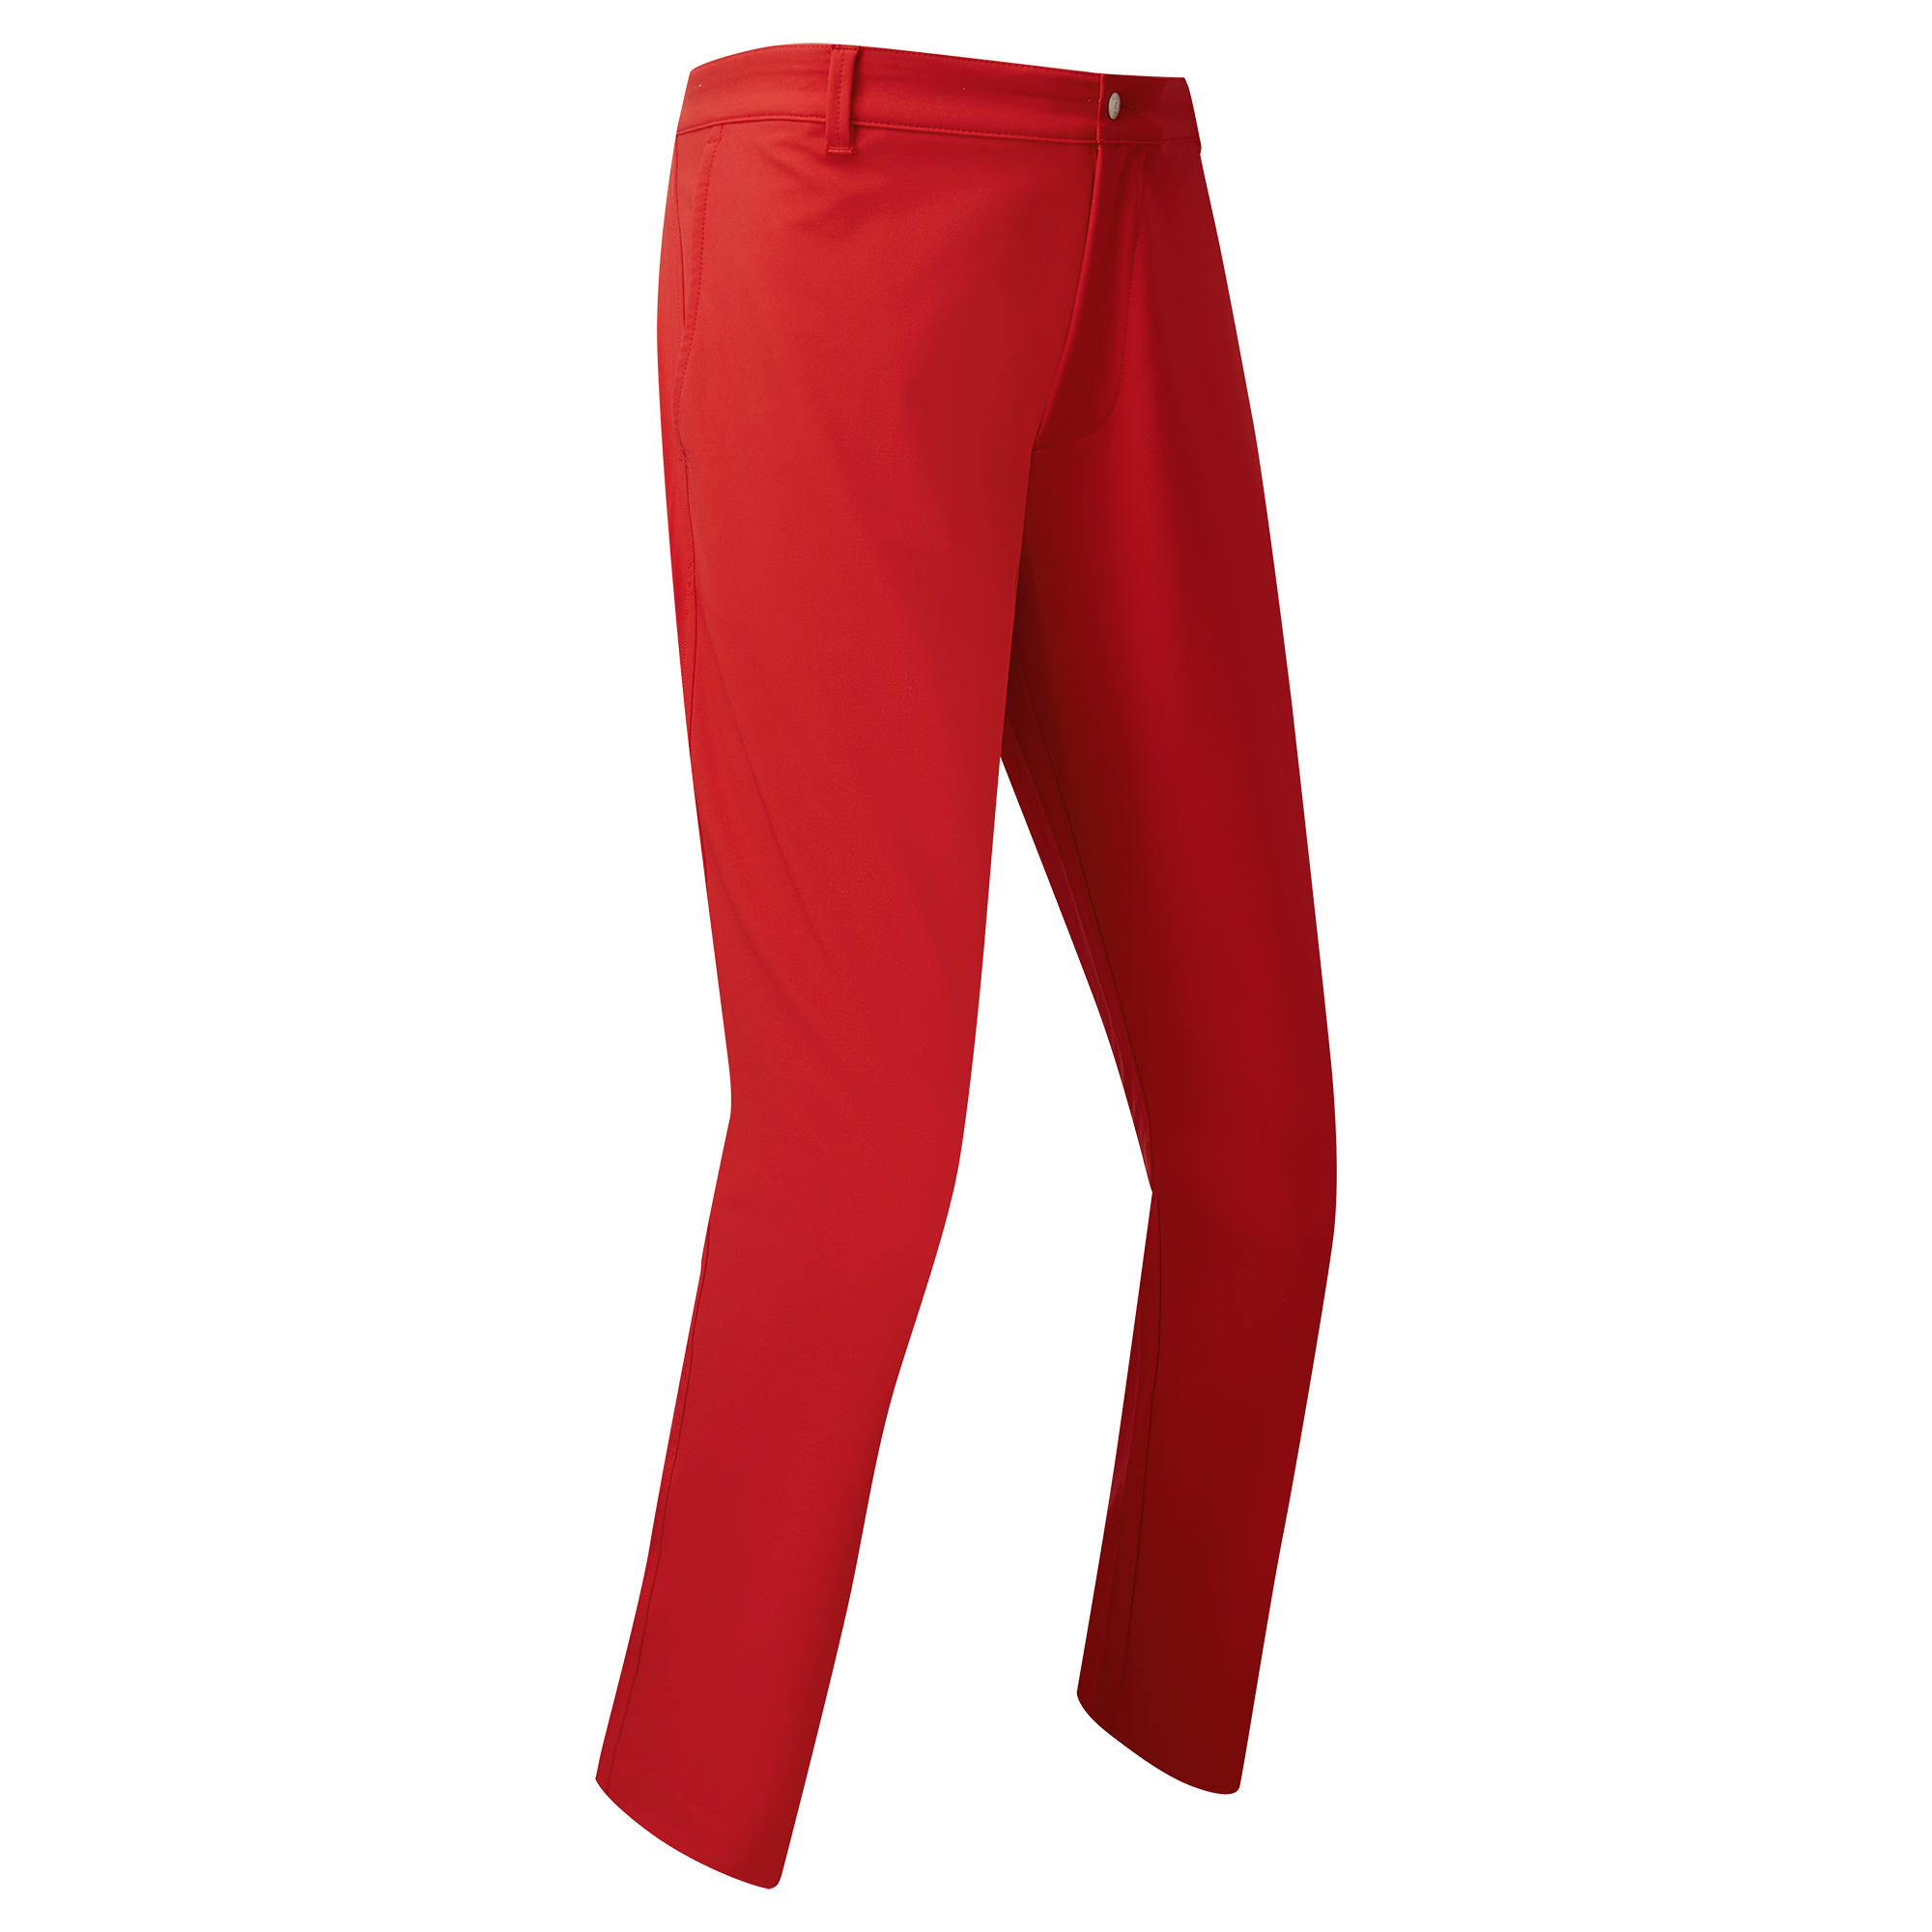 FootJoy Performance Tapered Fit pánské golfové kalhoty, červené, vel. 32/32